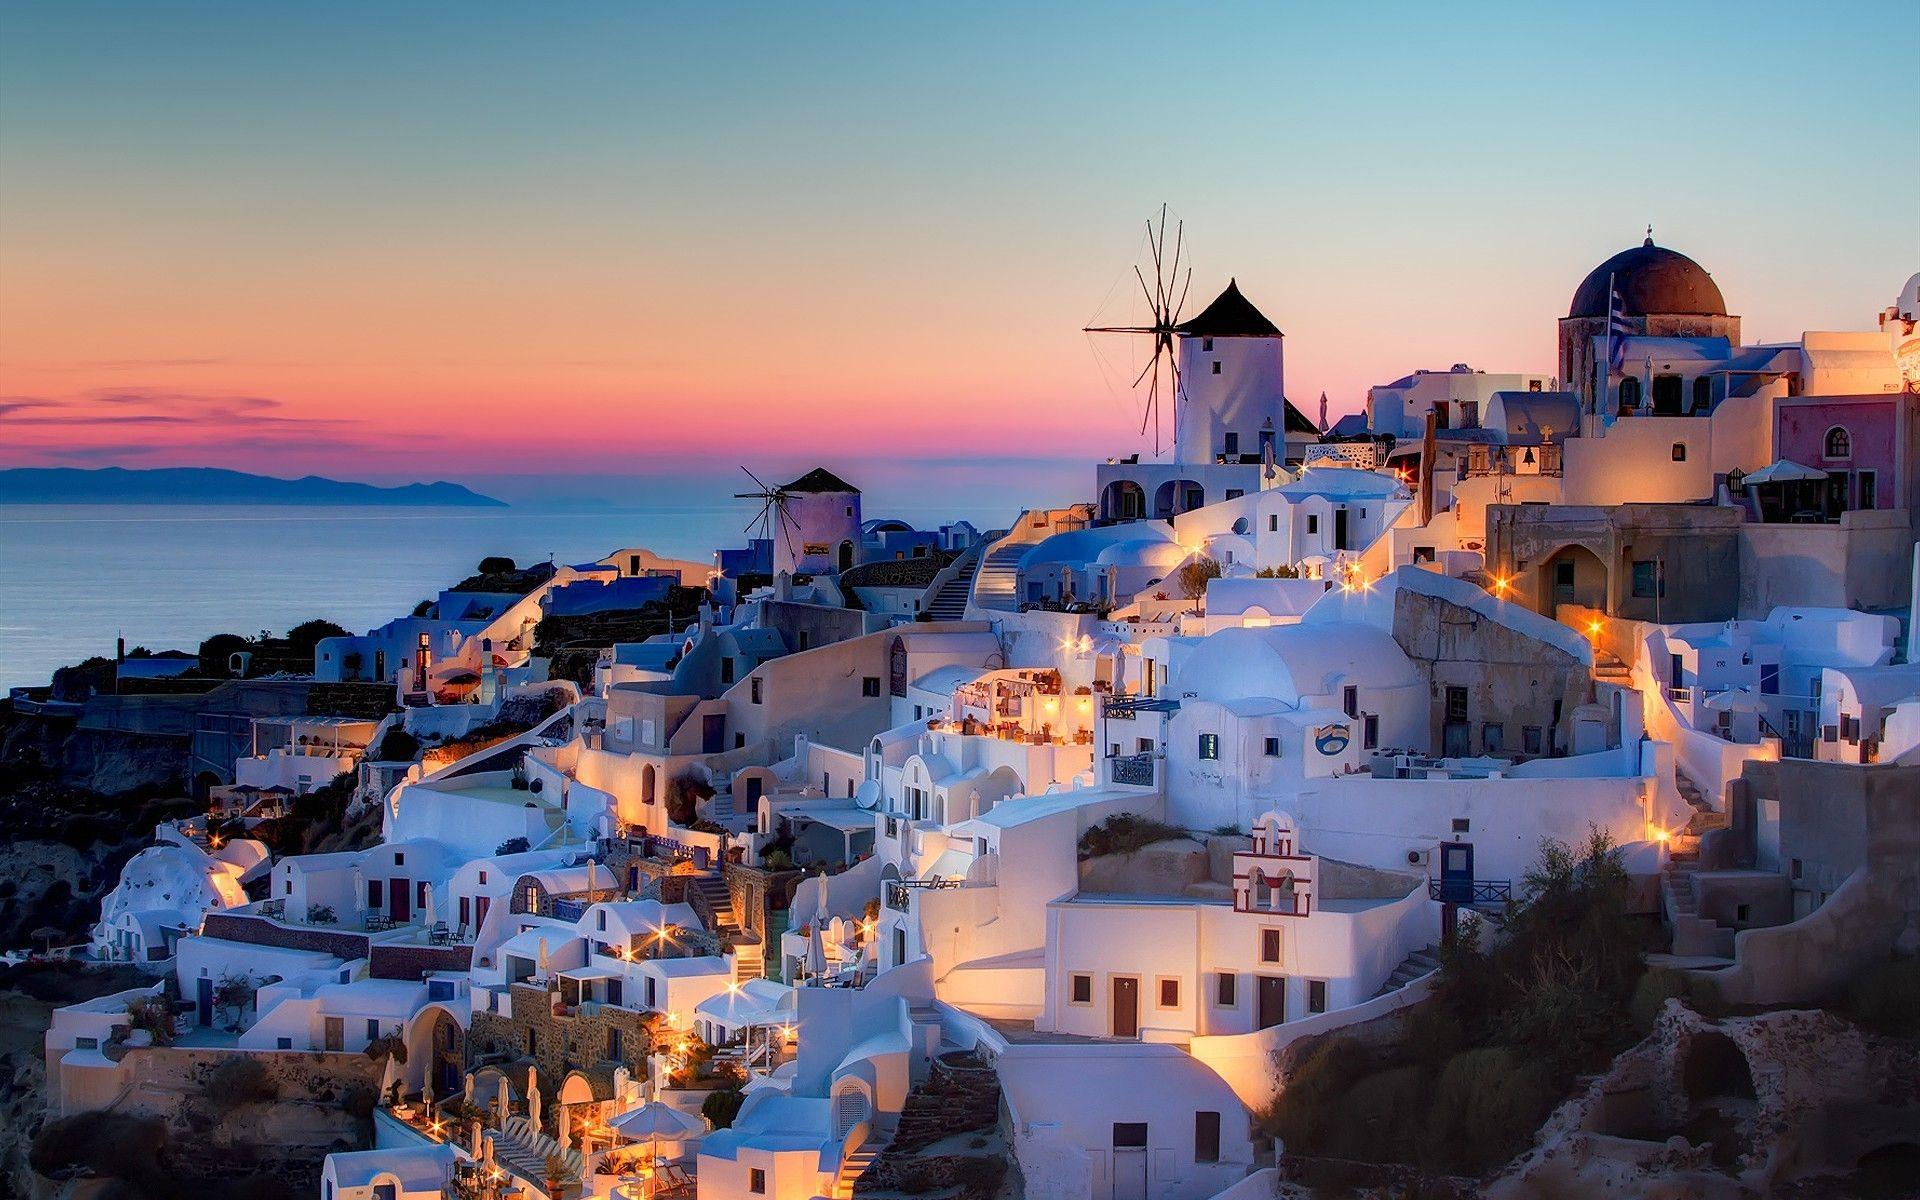 Bạn muốn tận hưởng những bức hình nền máy tính chất lượng cao của Hy Lạp, hãy xem ngay bức hình này. Được chụp từ góc độ hoàn hảo, đây là một hình ảnh đẹp nhất để bạn thưởng thức những khung cảnh ấn tượng trong những ngày nghỉ dưỡng của mình.